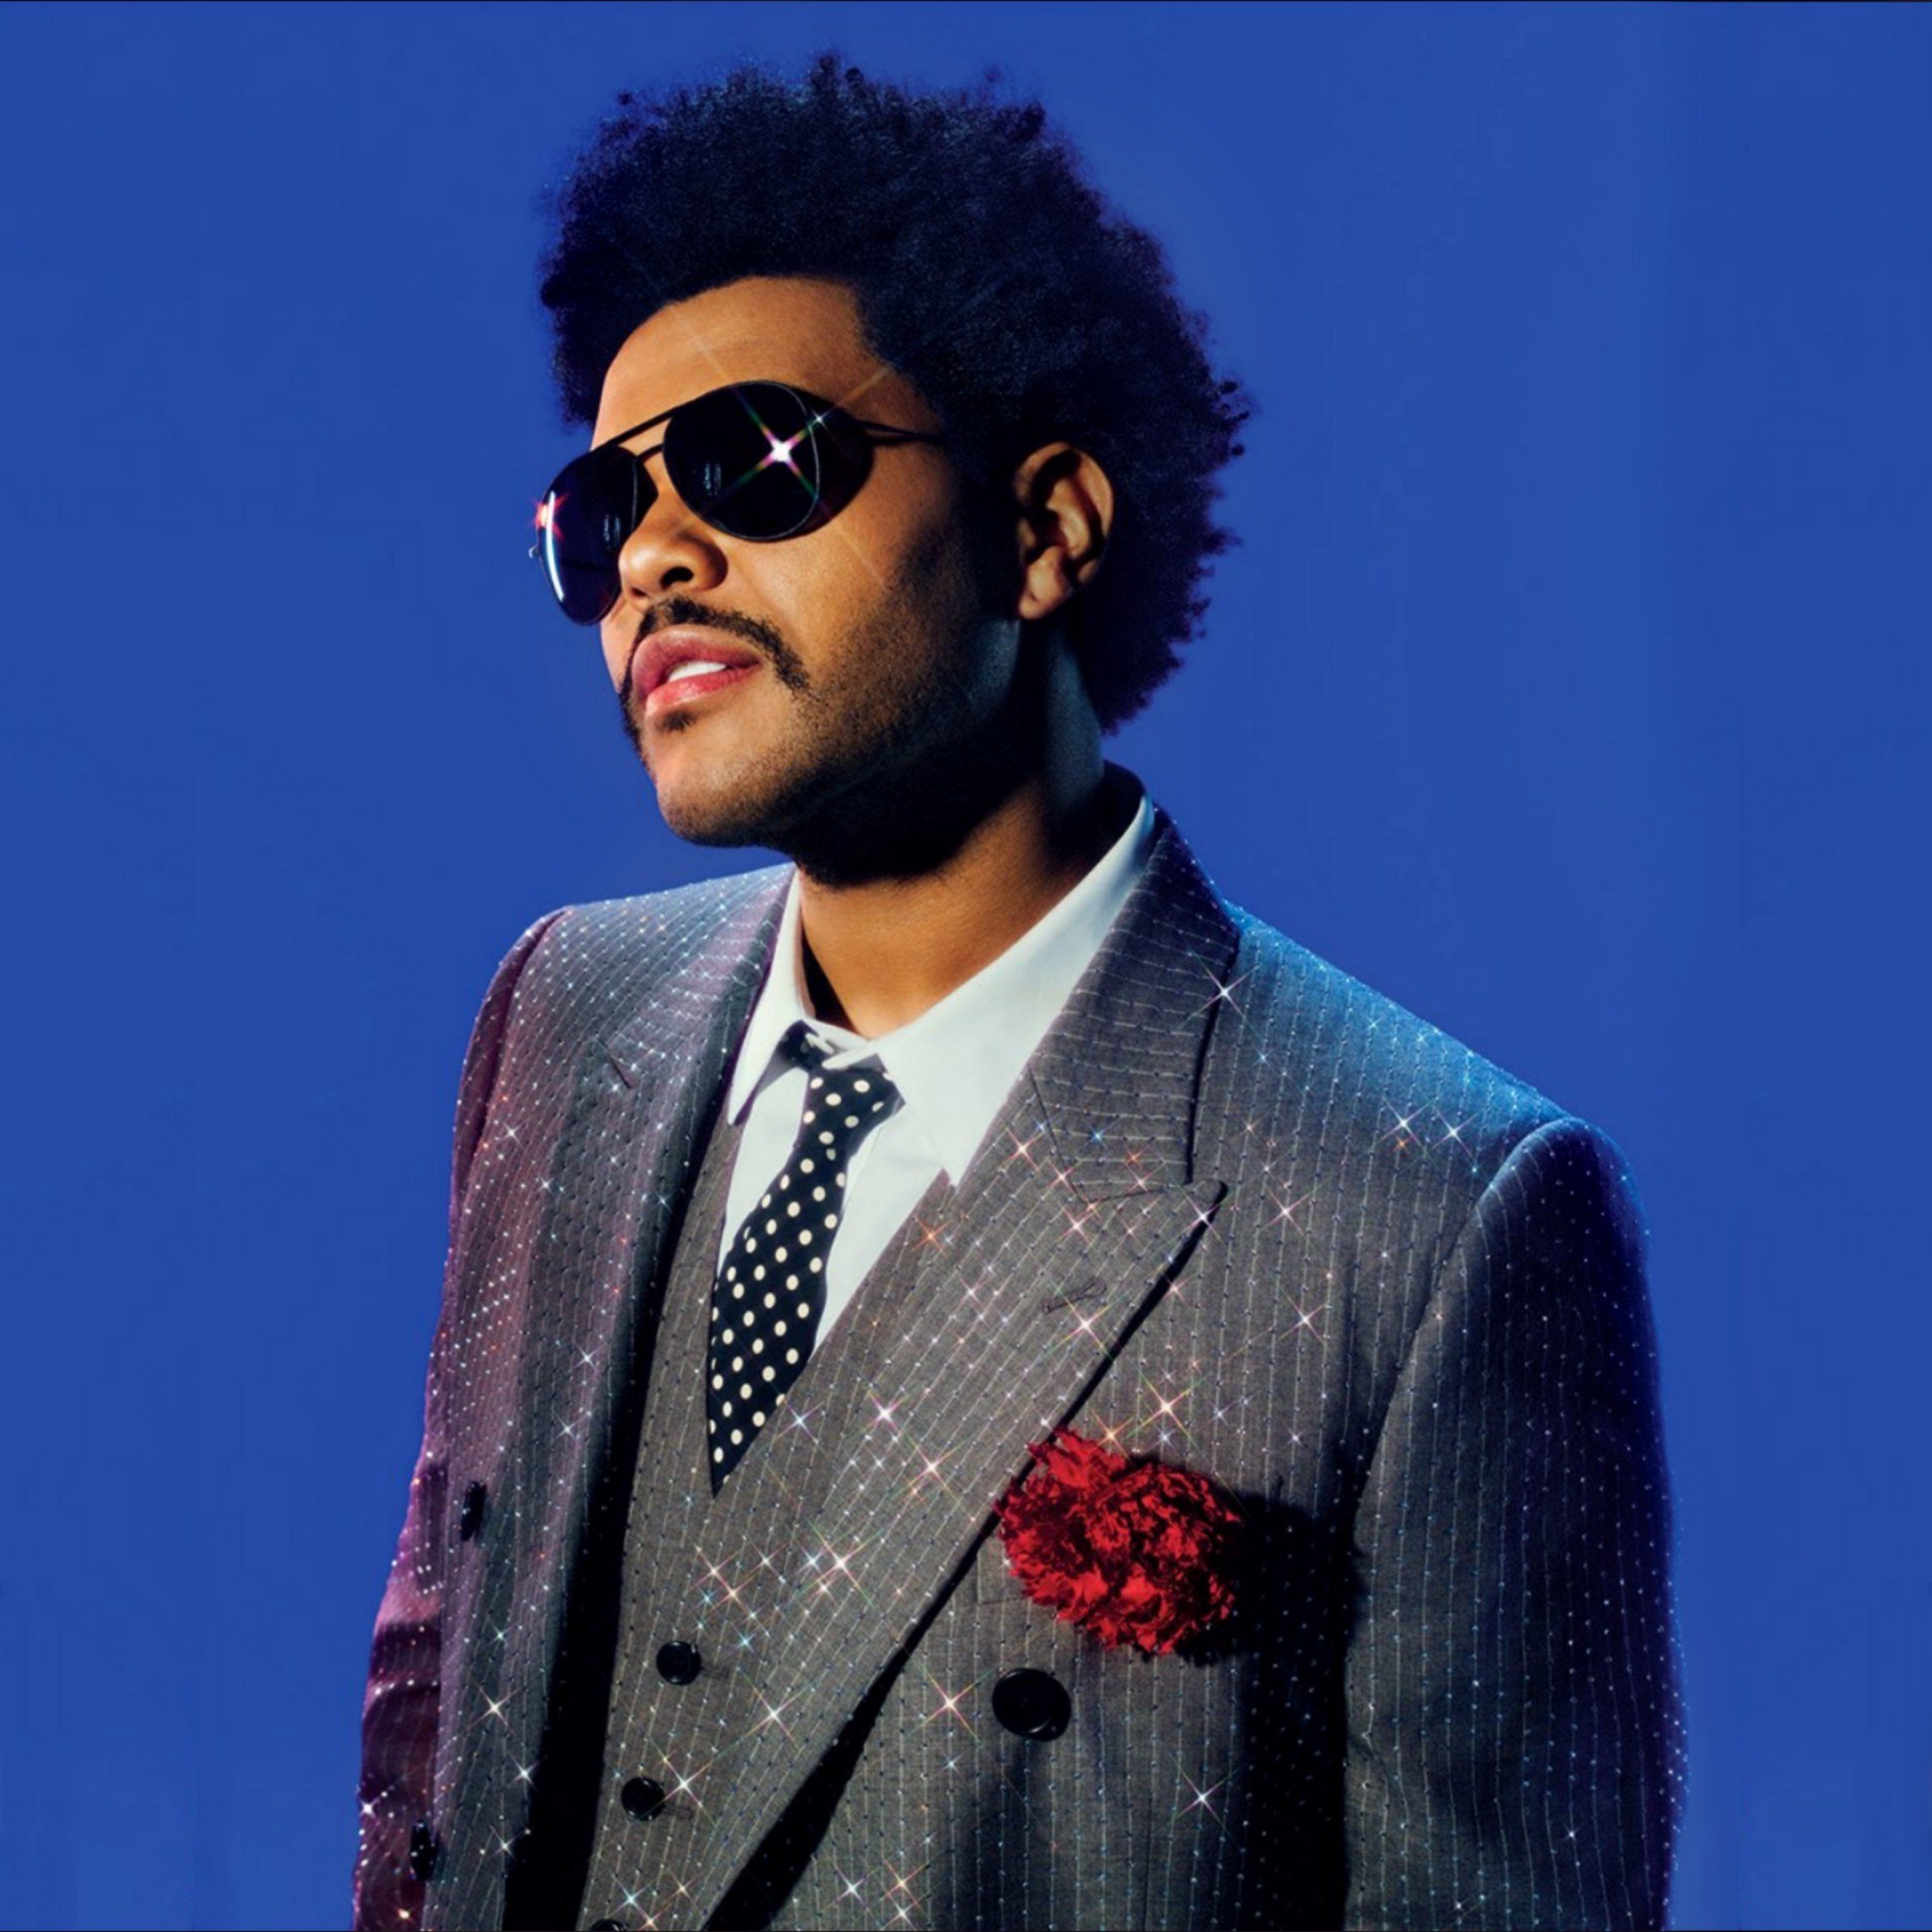 Трек weekend. The Weeknd. Певец the Weeknd. The Weeknd фото. The Weeknd певец 2020.